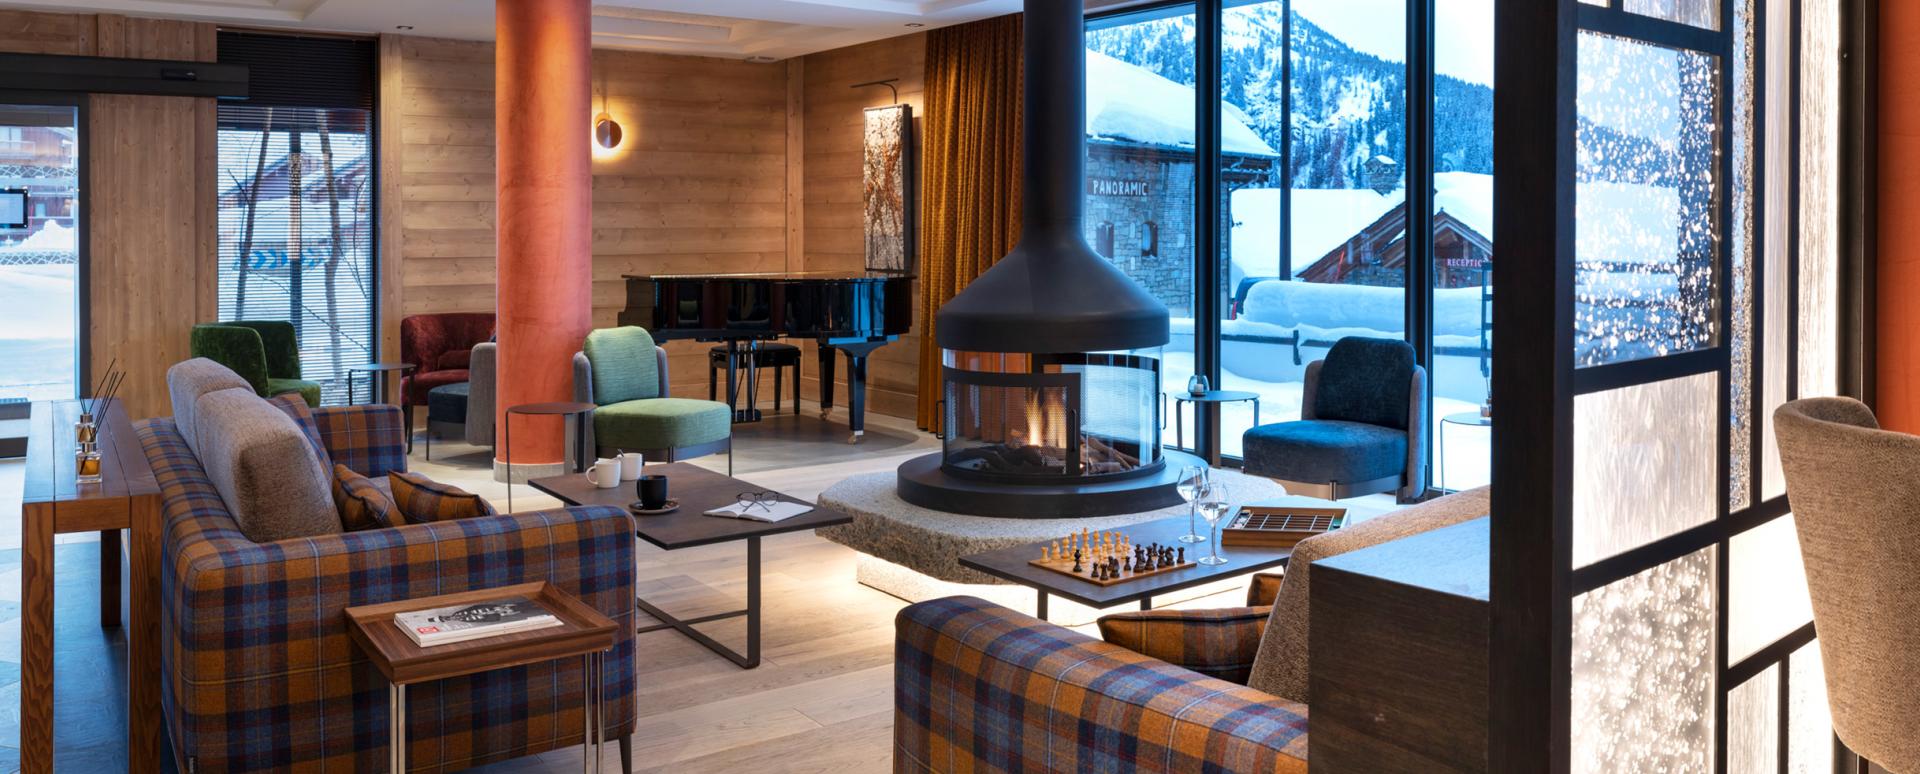 M'Bar - Hôtel Alpen Lodge - La Rosière - MGM Hôtels & Résidences